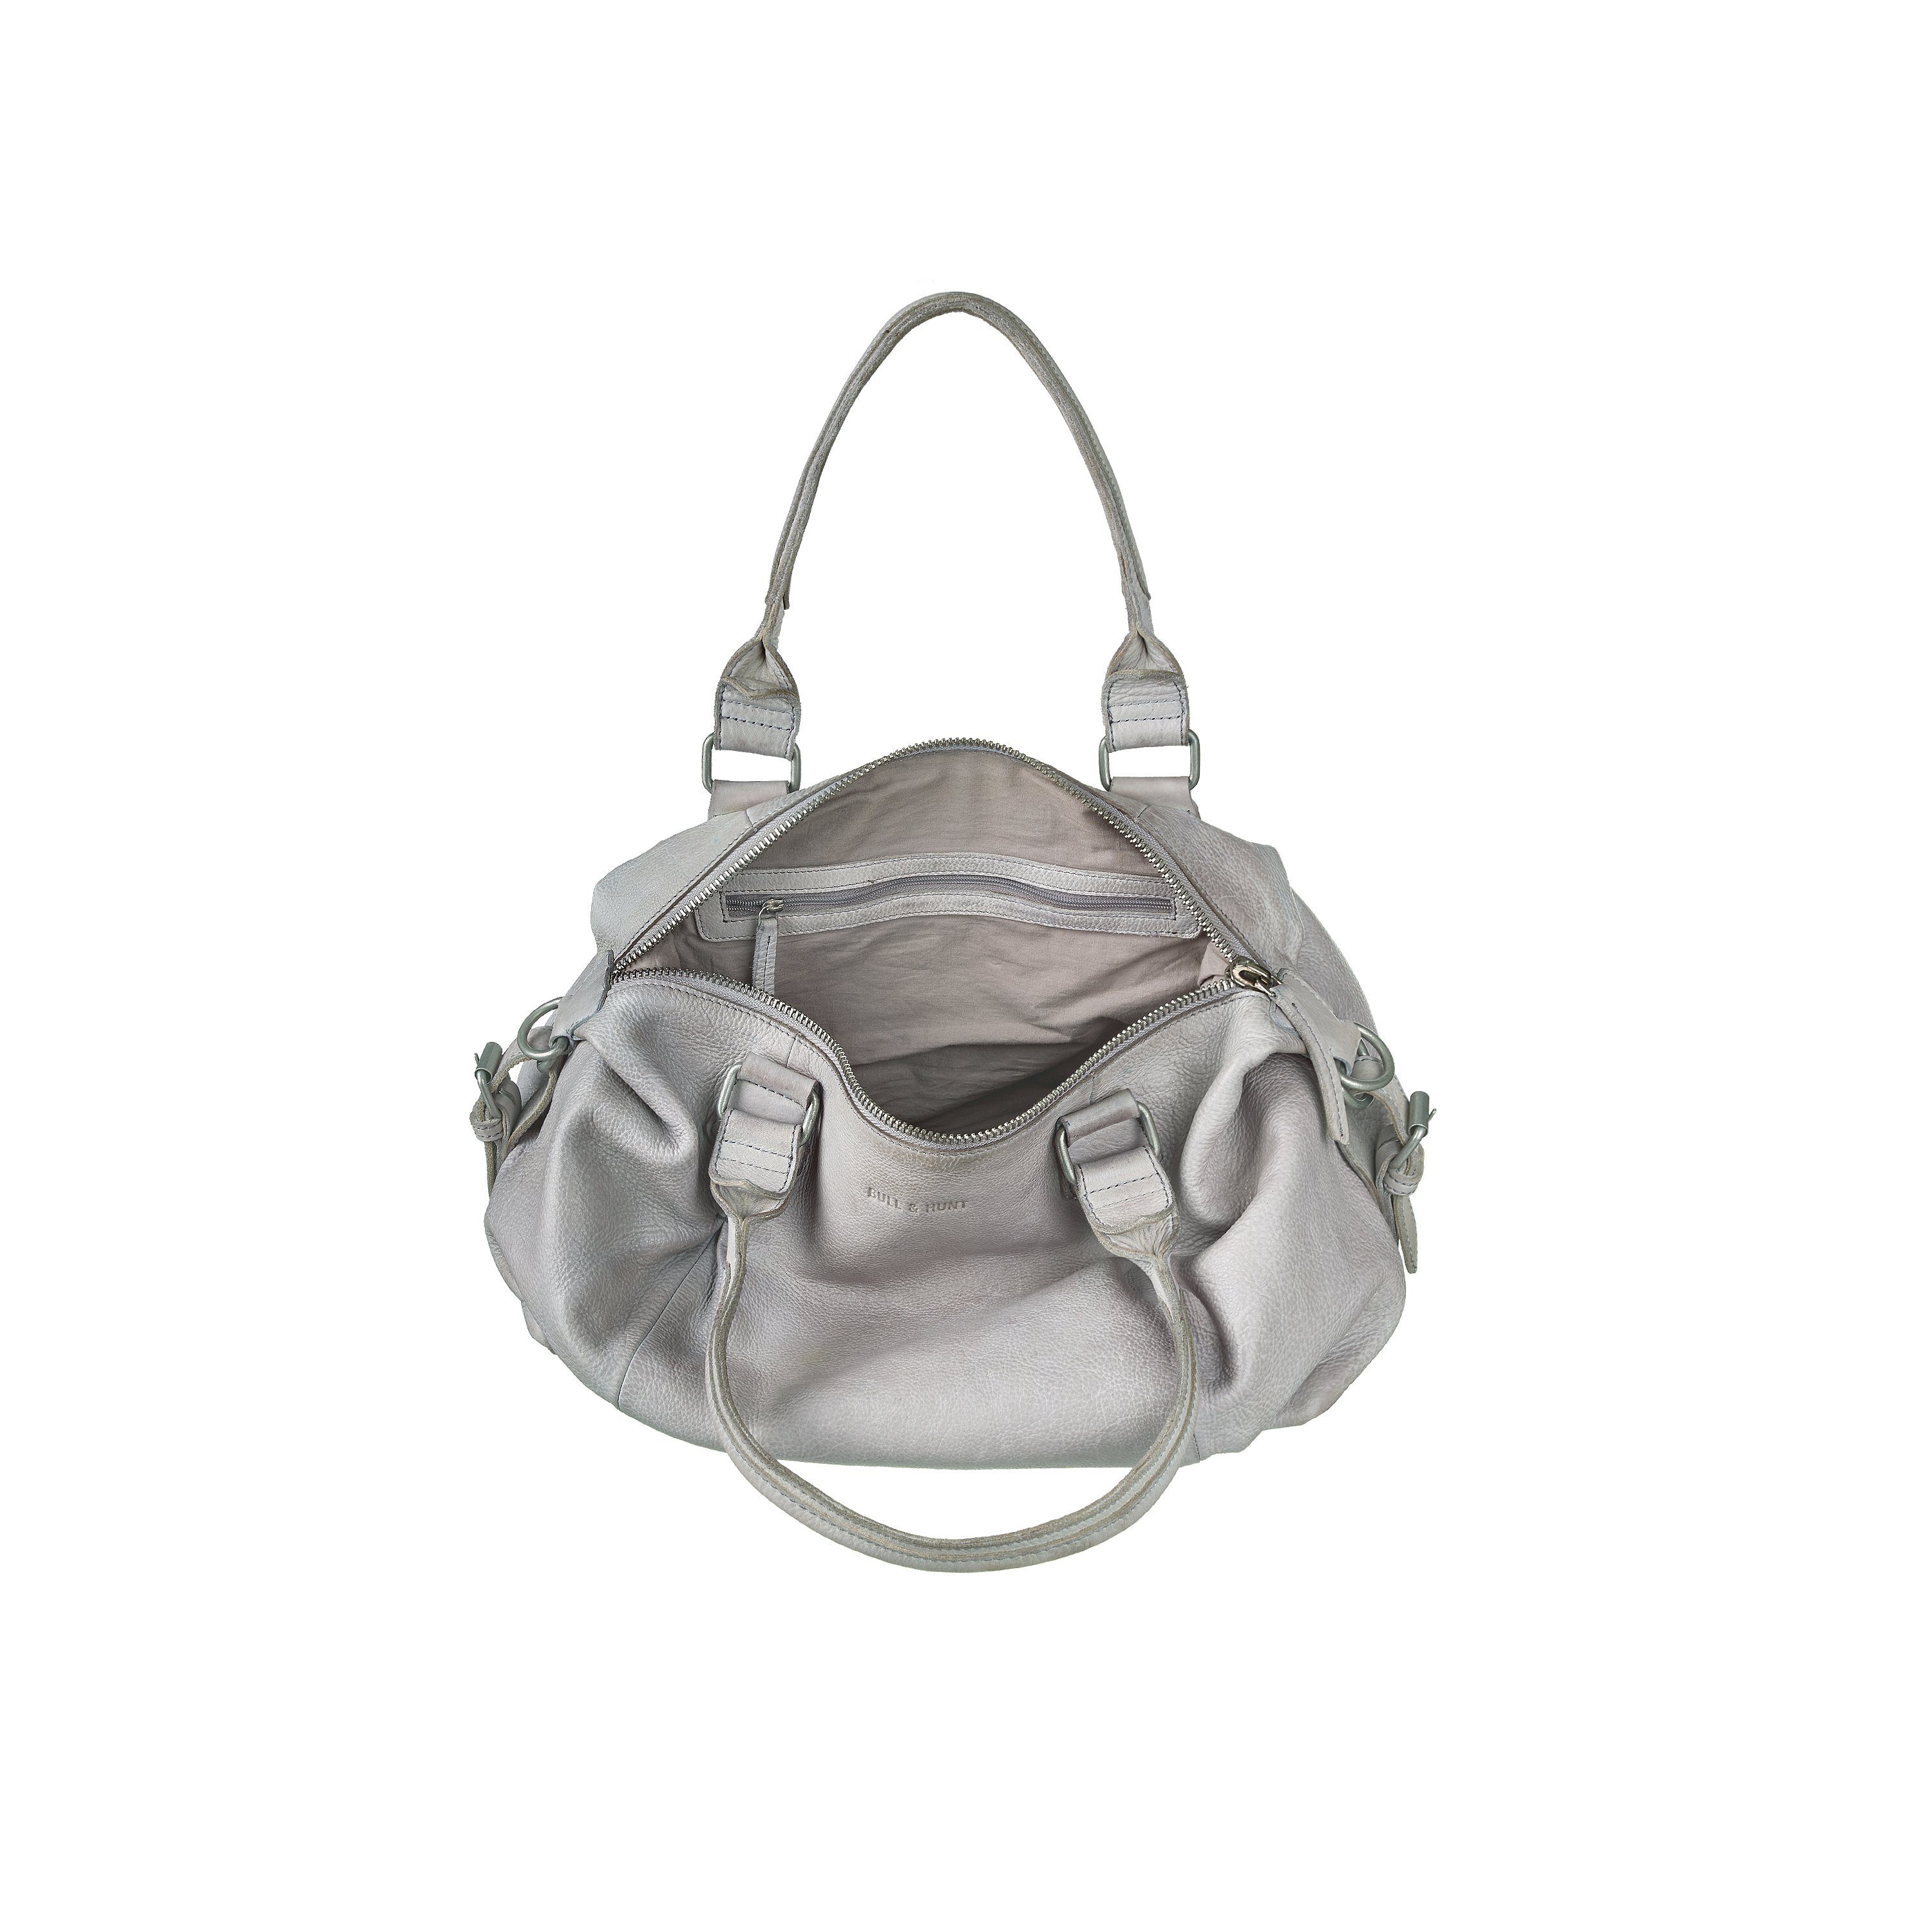 Hunt Handtasche clea Bull grey & light